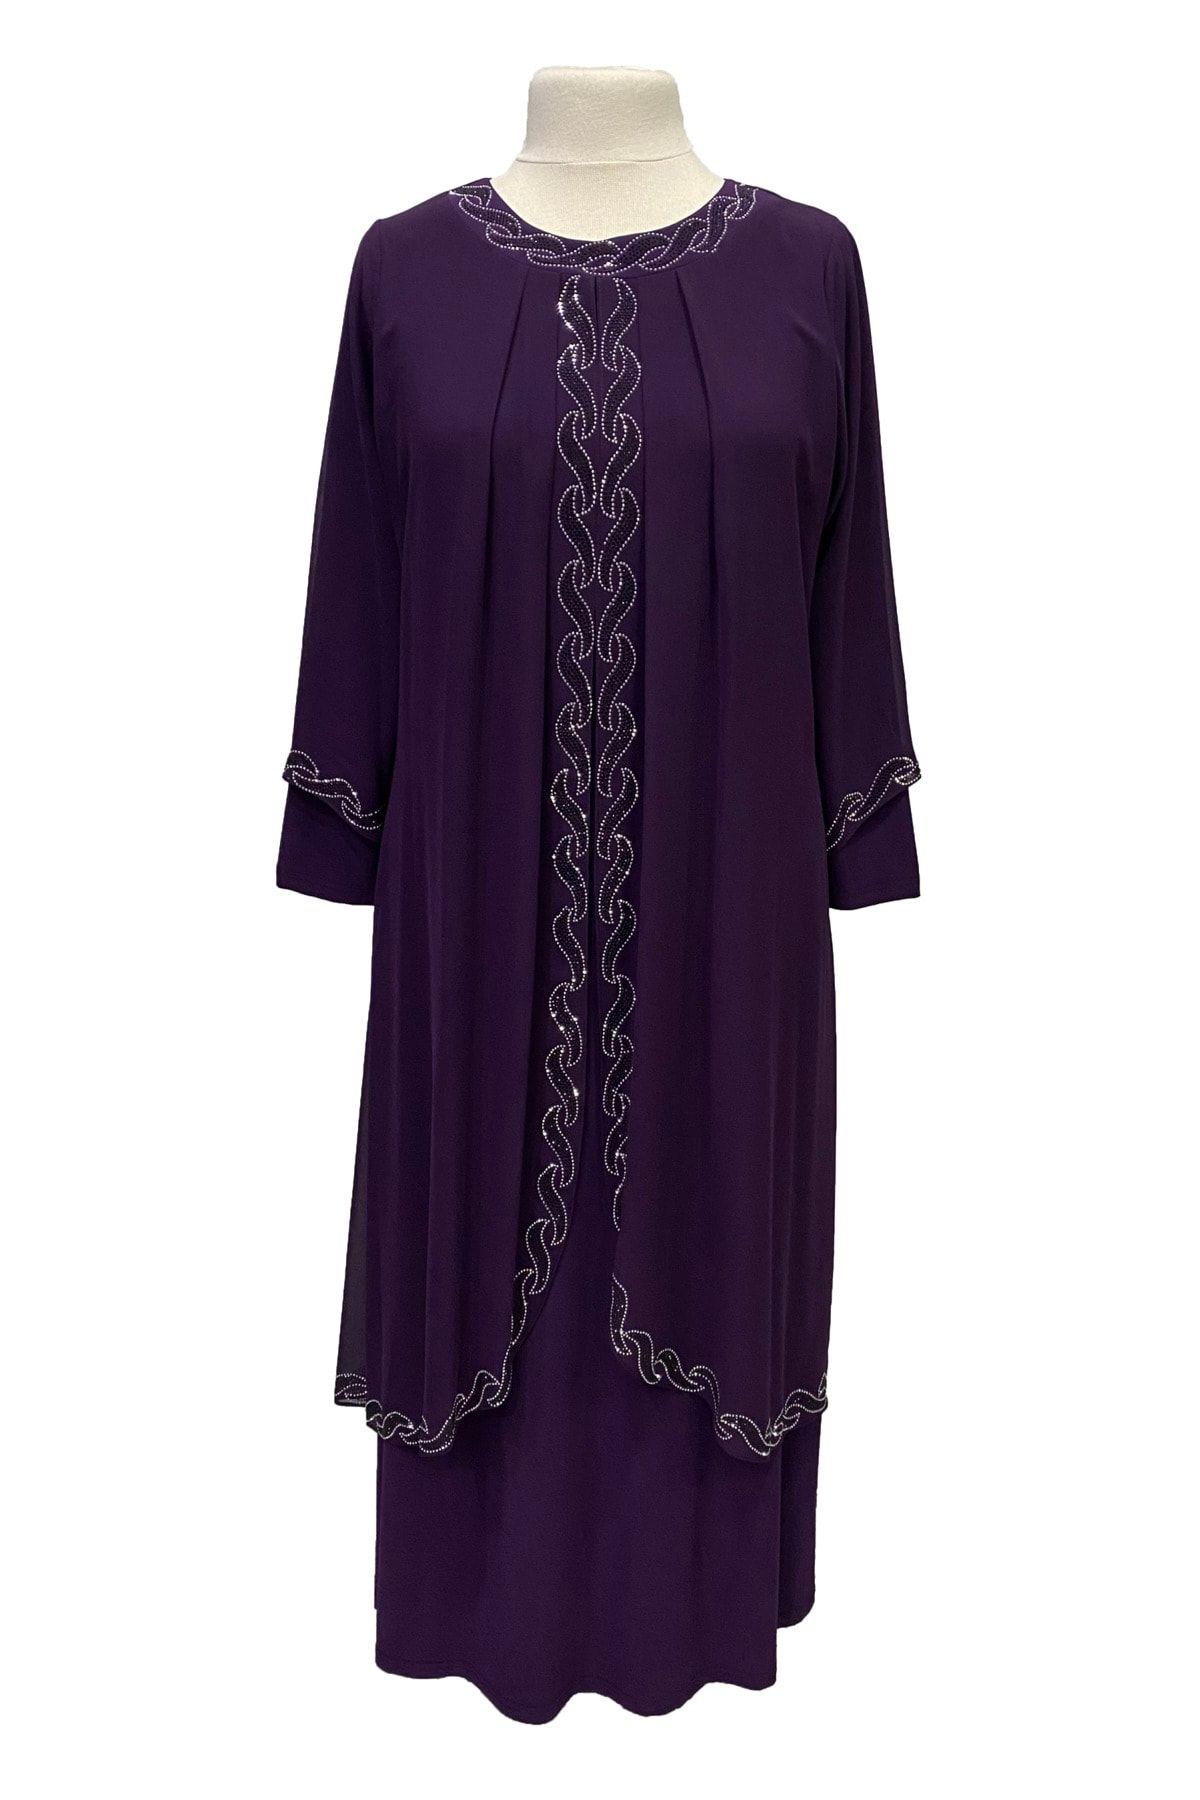 Giyinen Mağazaları Mürdüm Saadet Şık Taş Işlemeli Büyük Beden Anne Abiye Elbise